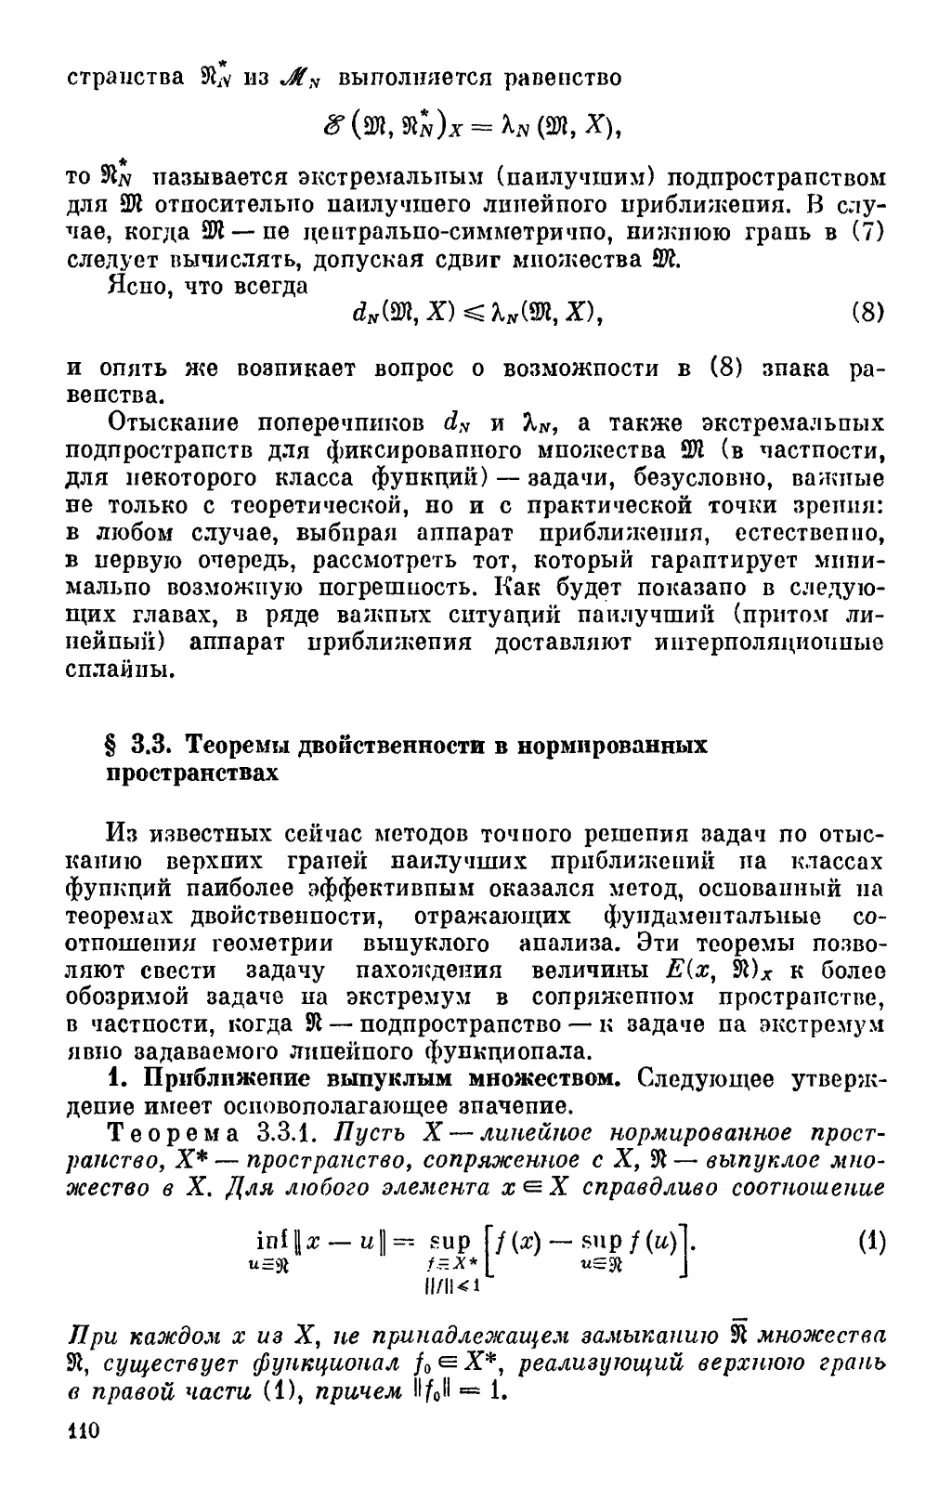 § 3.3. Теоремы двойственности в нормированных пространствах